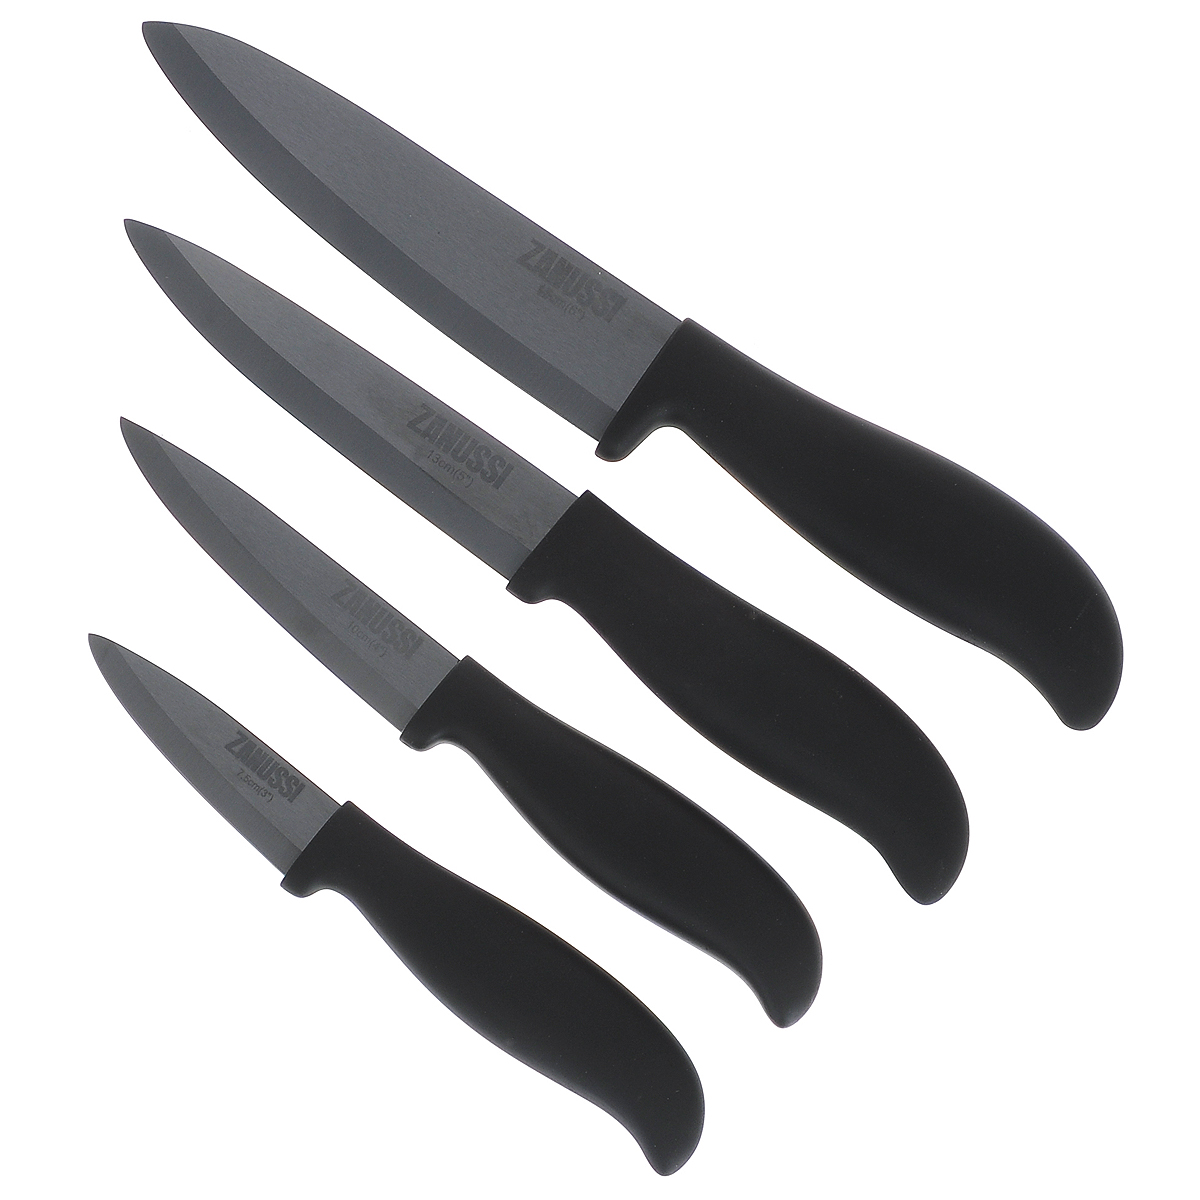 Керамические кухонные ножи купить. Набор ножей Занусси. Zanussi zkset-1 кухонные ножи. Набор керамических ножей Zanussi. Ножи Занусси набор 3 ножа.